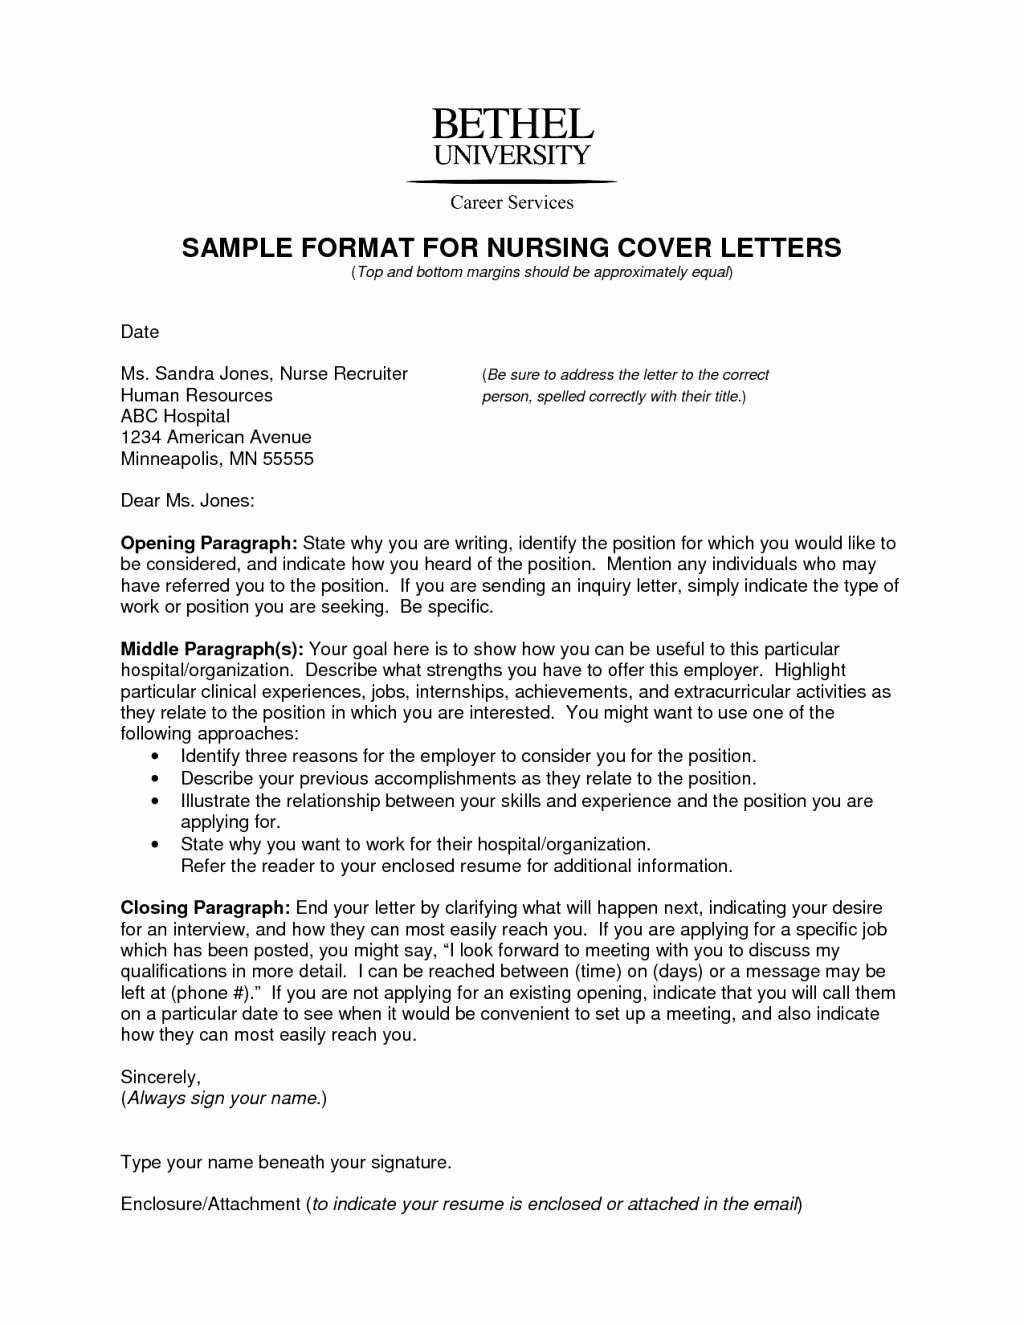 Well Cover Letter Nursing New Grad – Letter format Writing